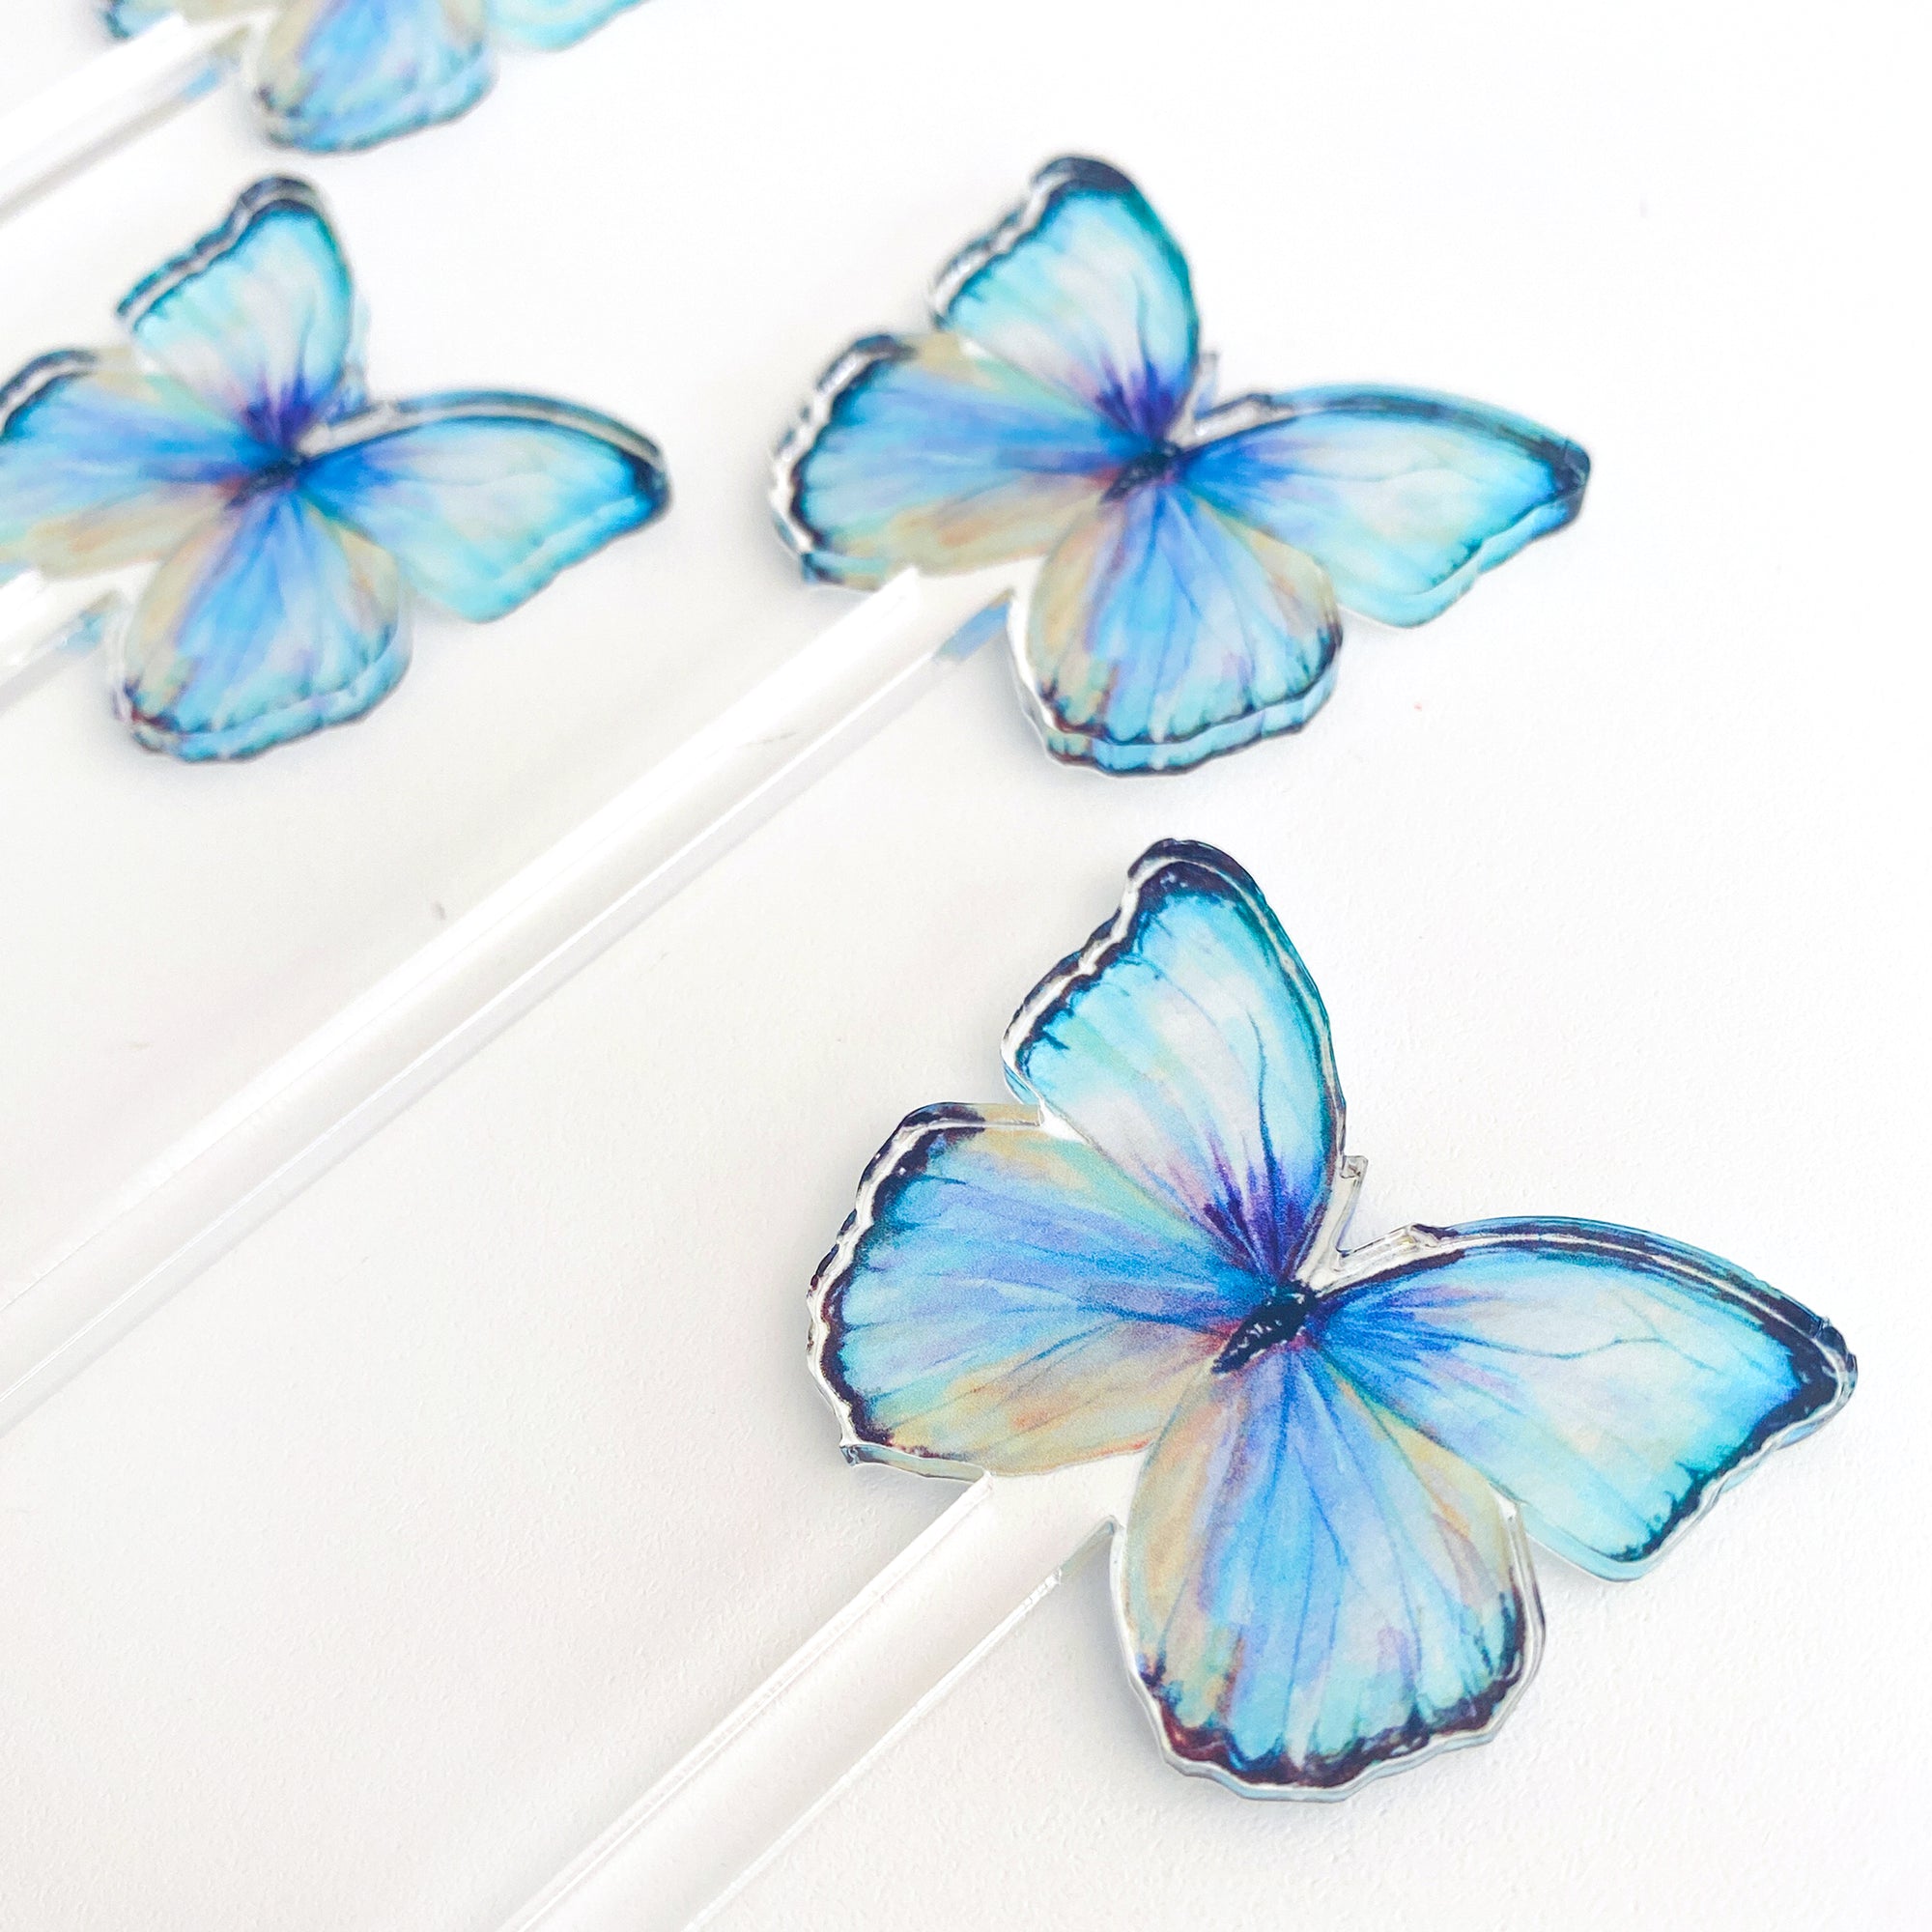 Blue Morpho Butterfly Acrylic Stir Sticks